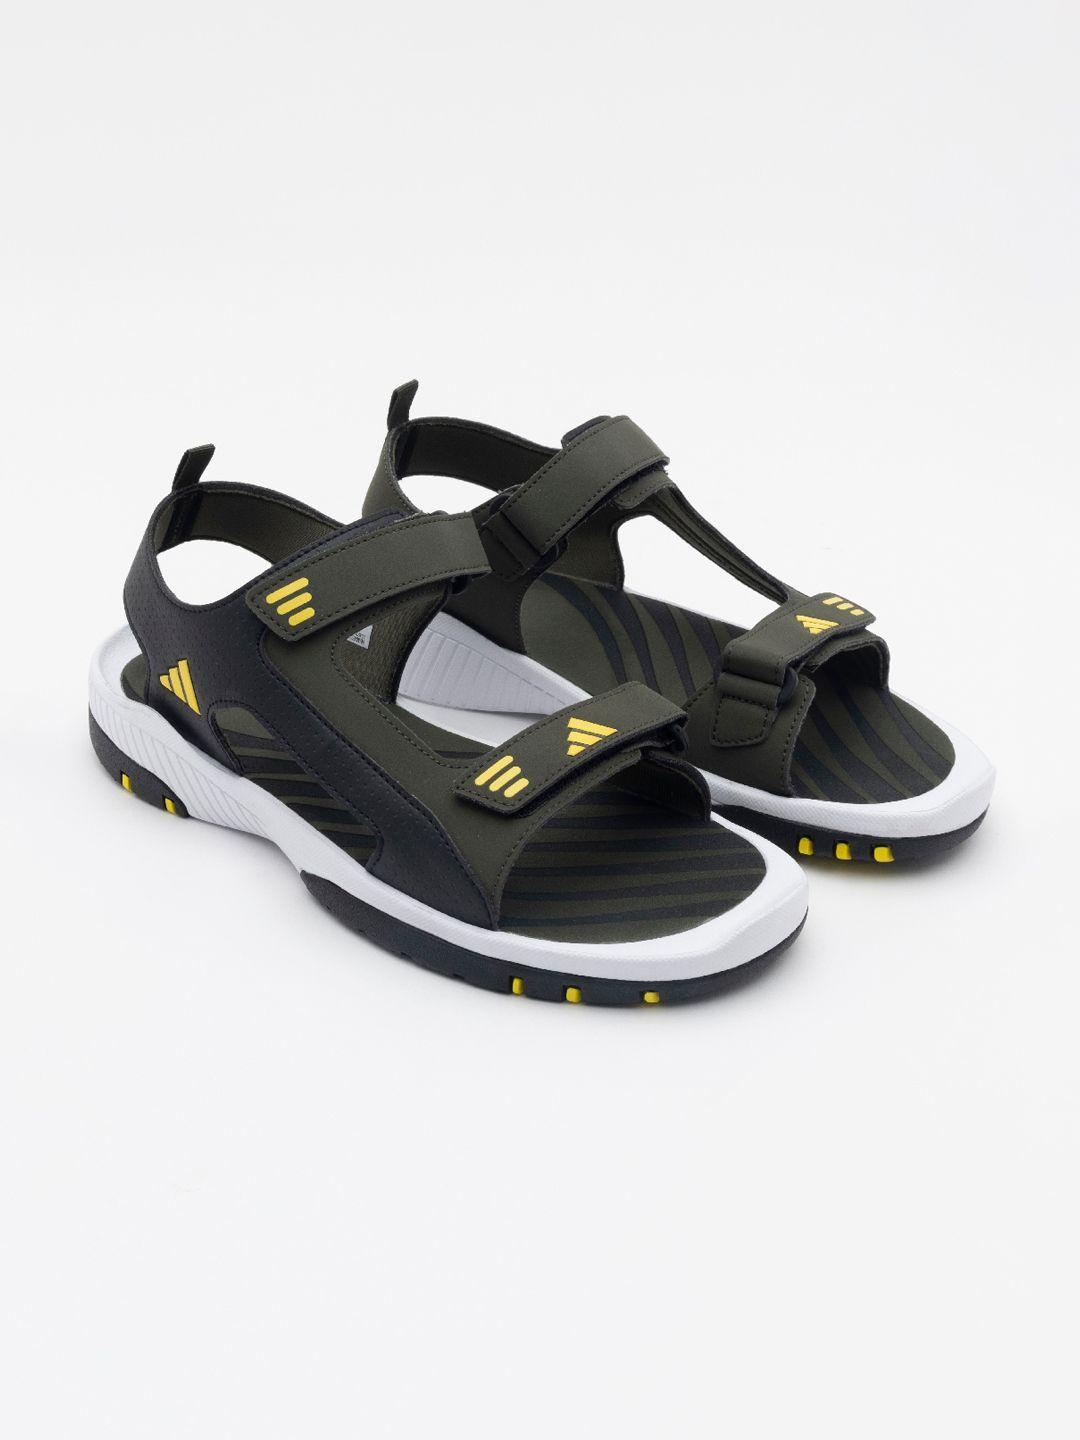 adidas-plodzee-m-sports-sandals